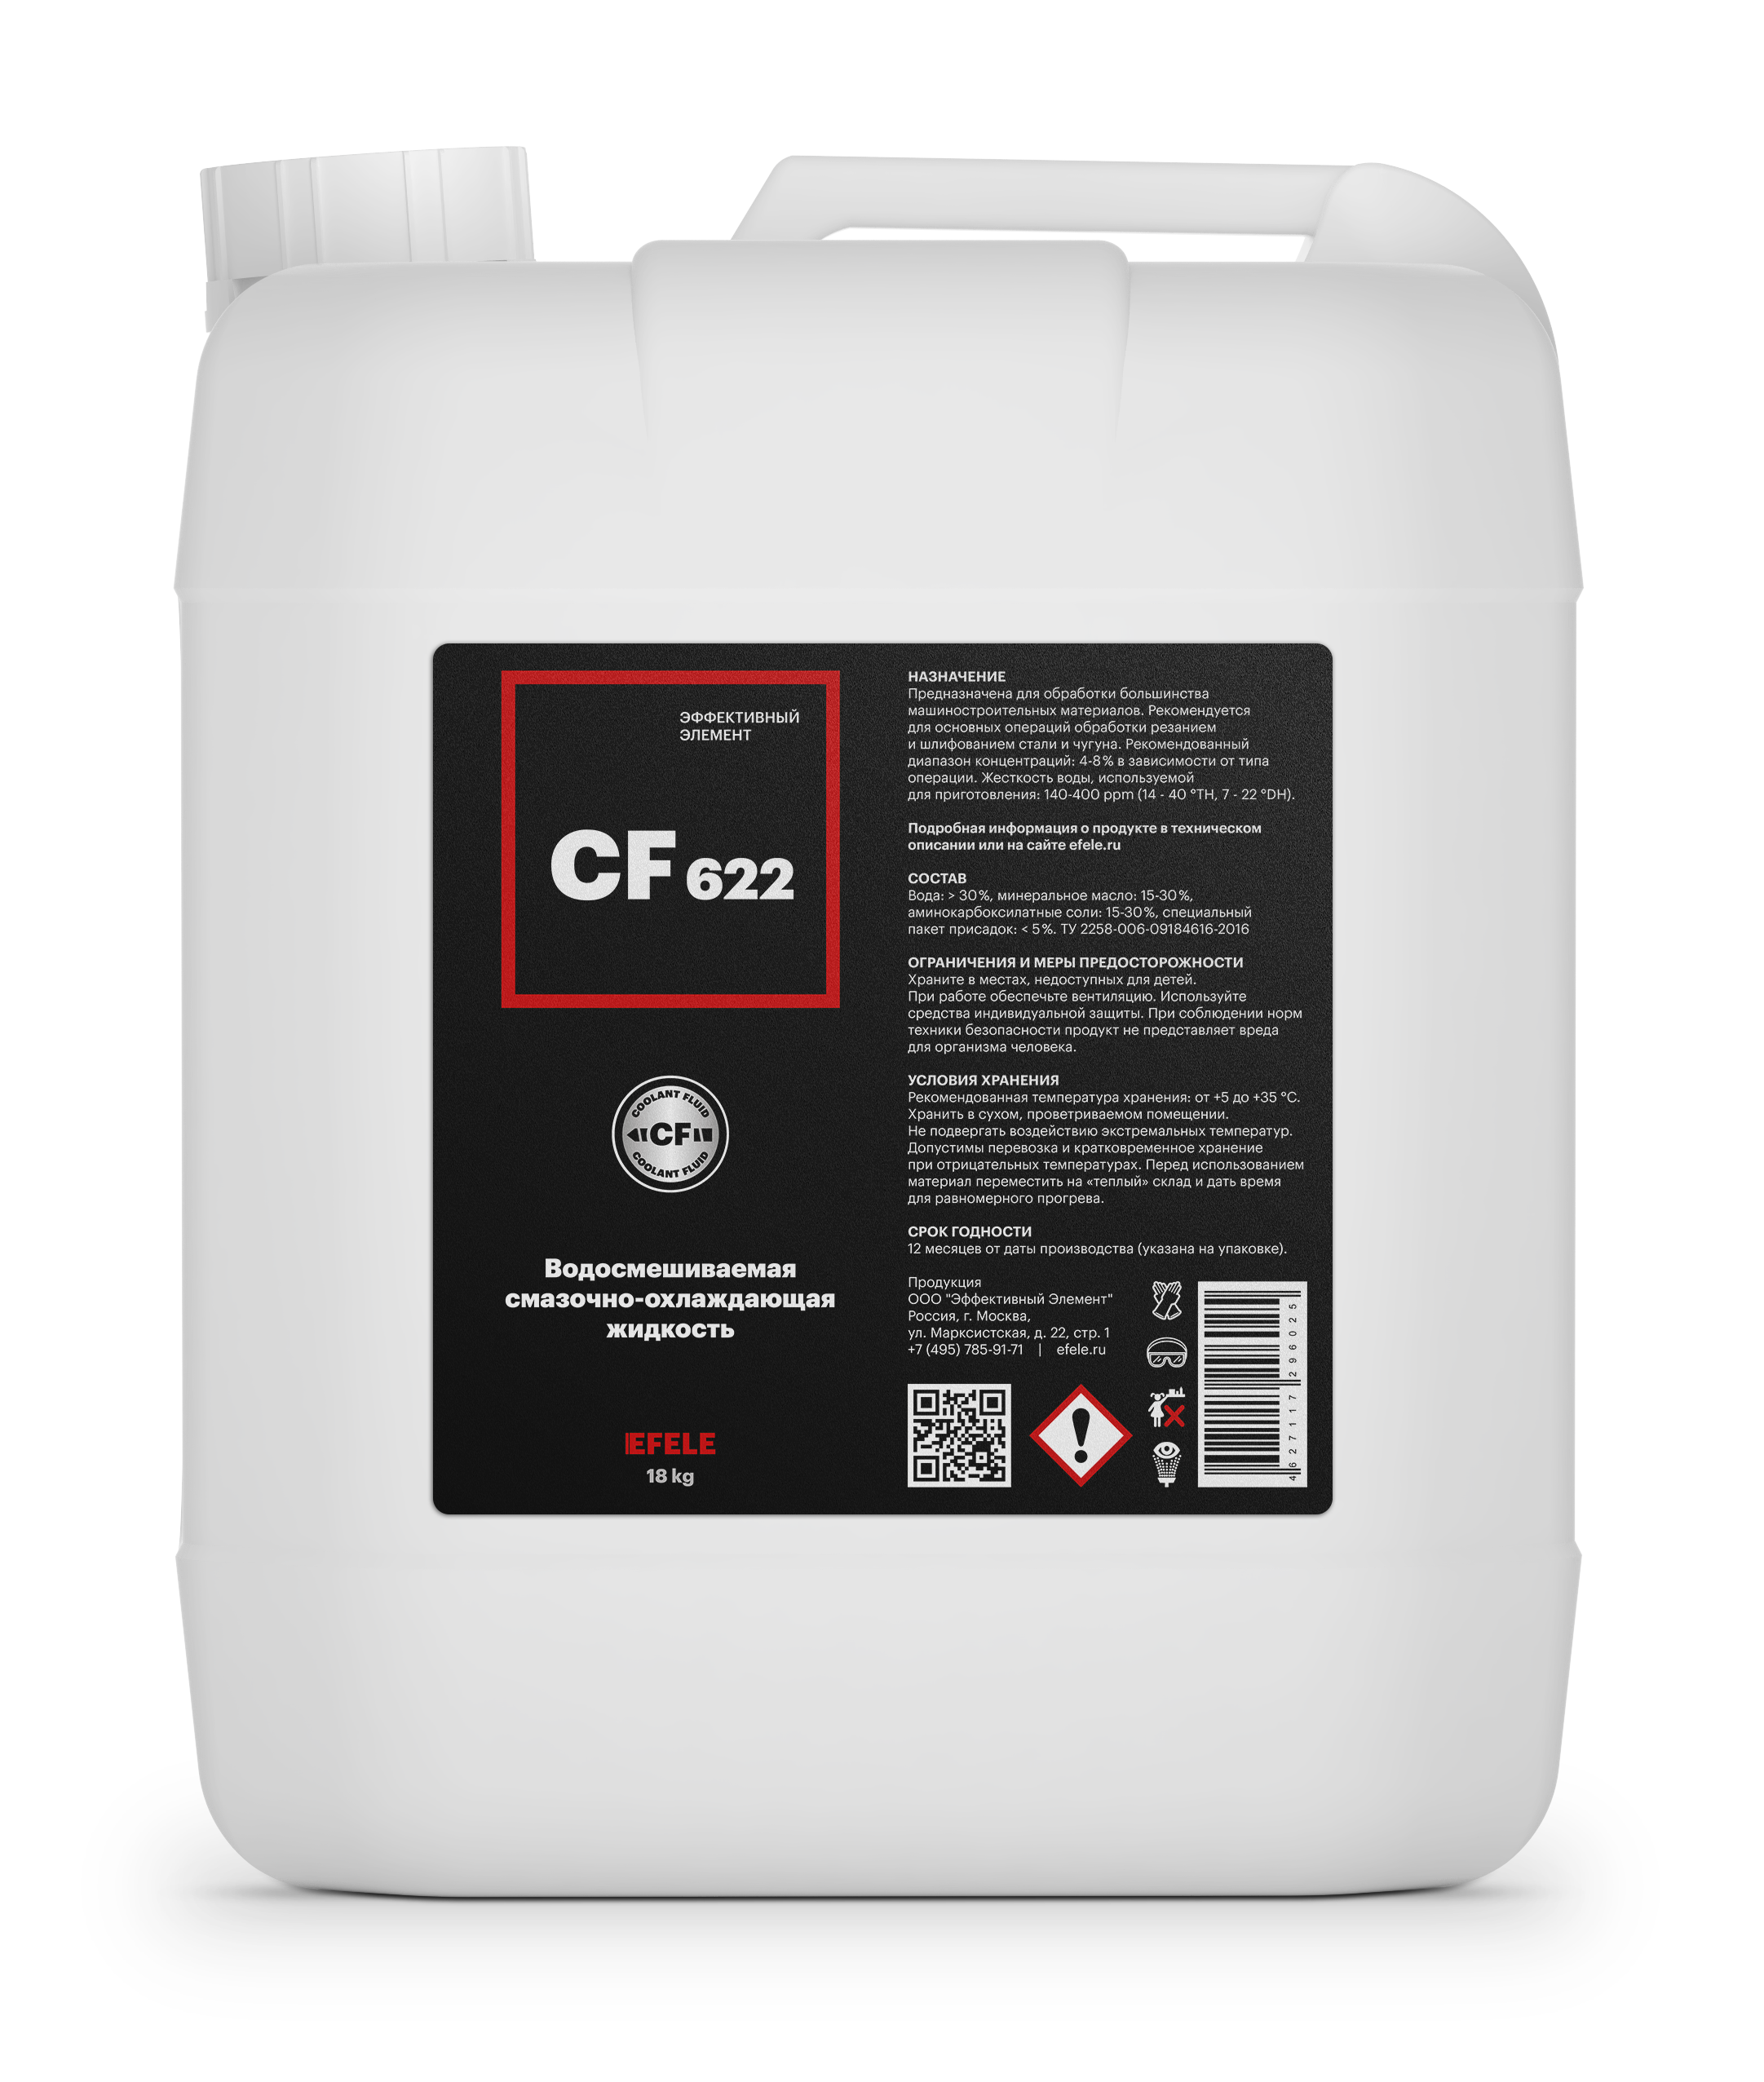 Полусинтетическая СОЖ для металлообработки Efele CF-622 (18 кг)